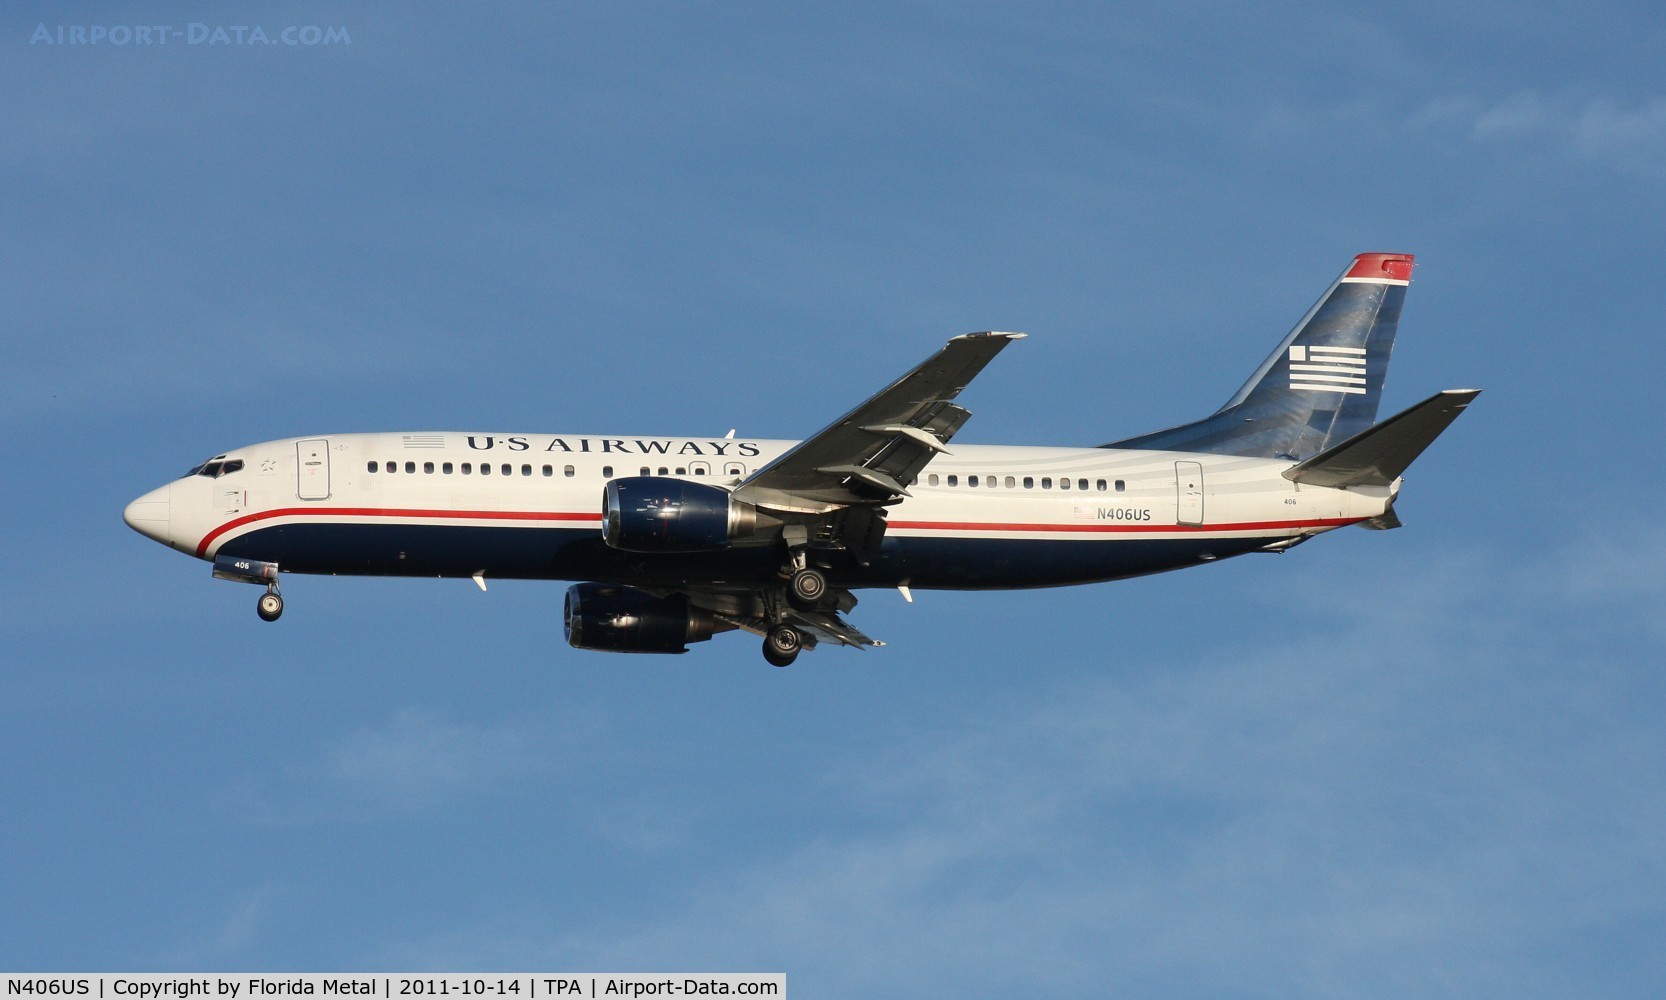 N406US, 1988 Boeing 737-401 C/N 23876, US Airways 737-400